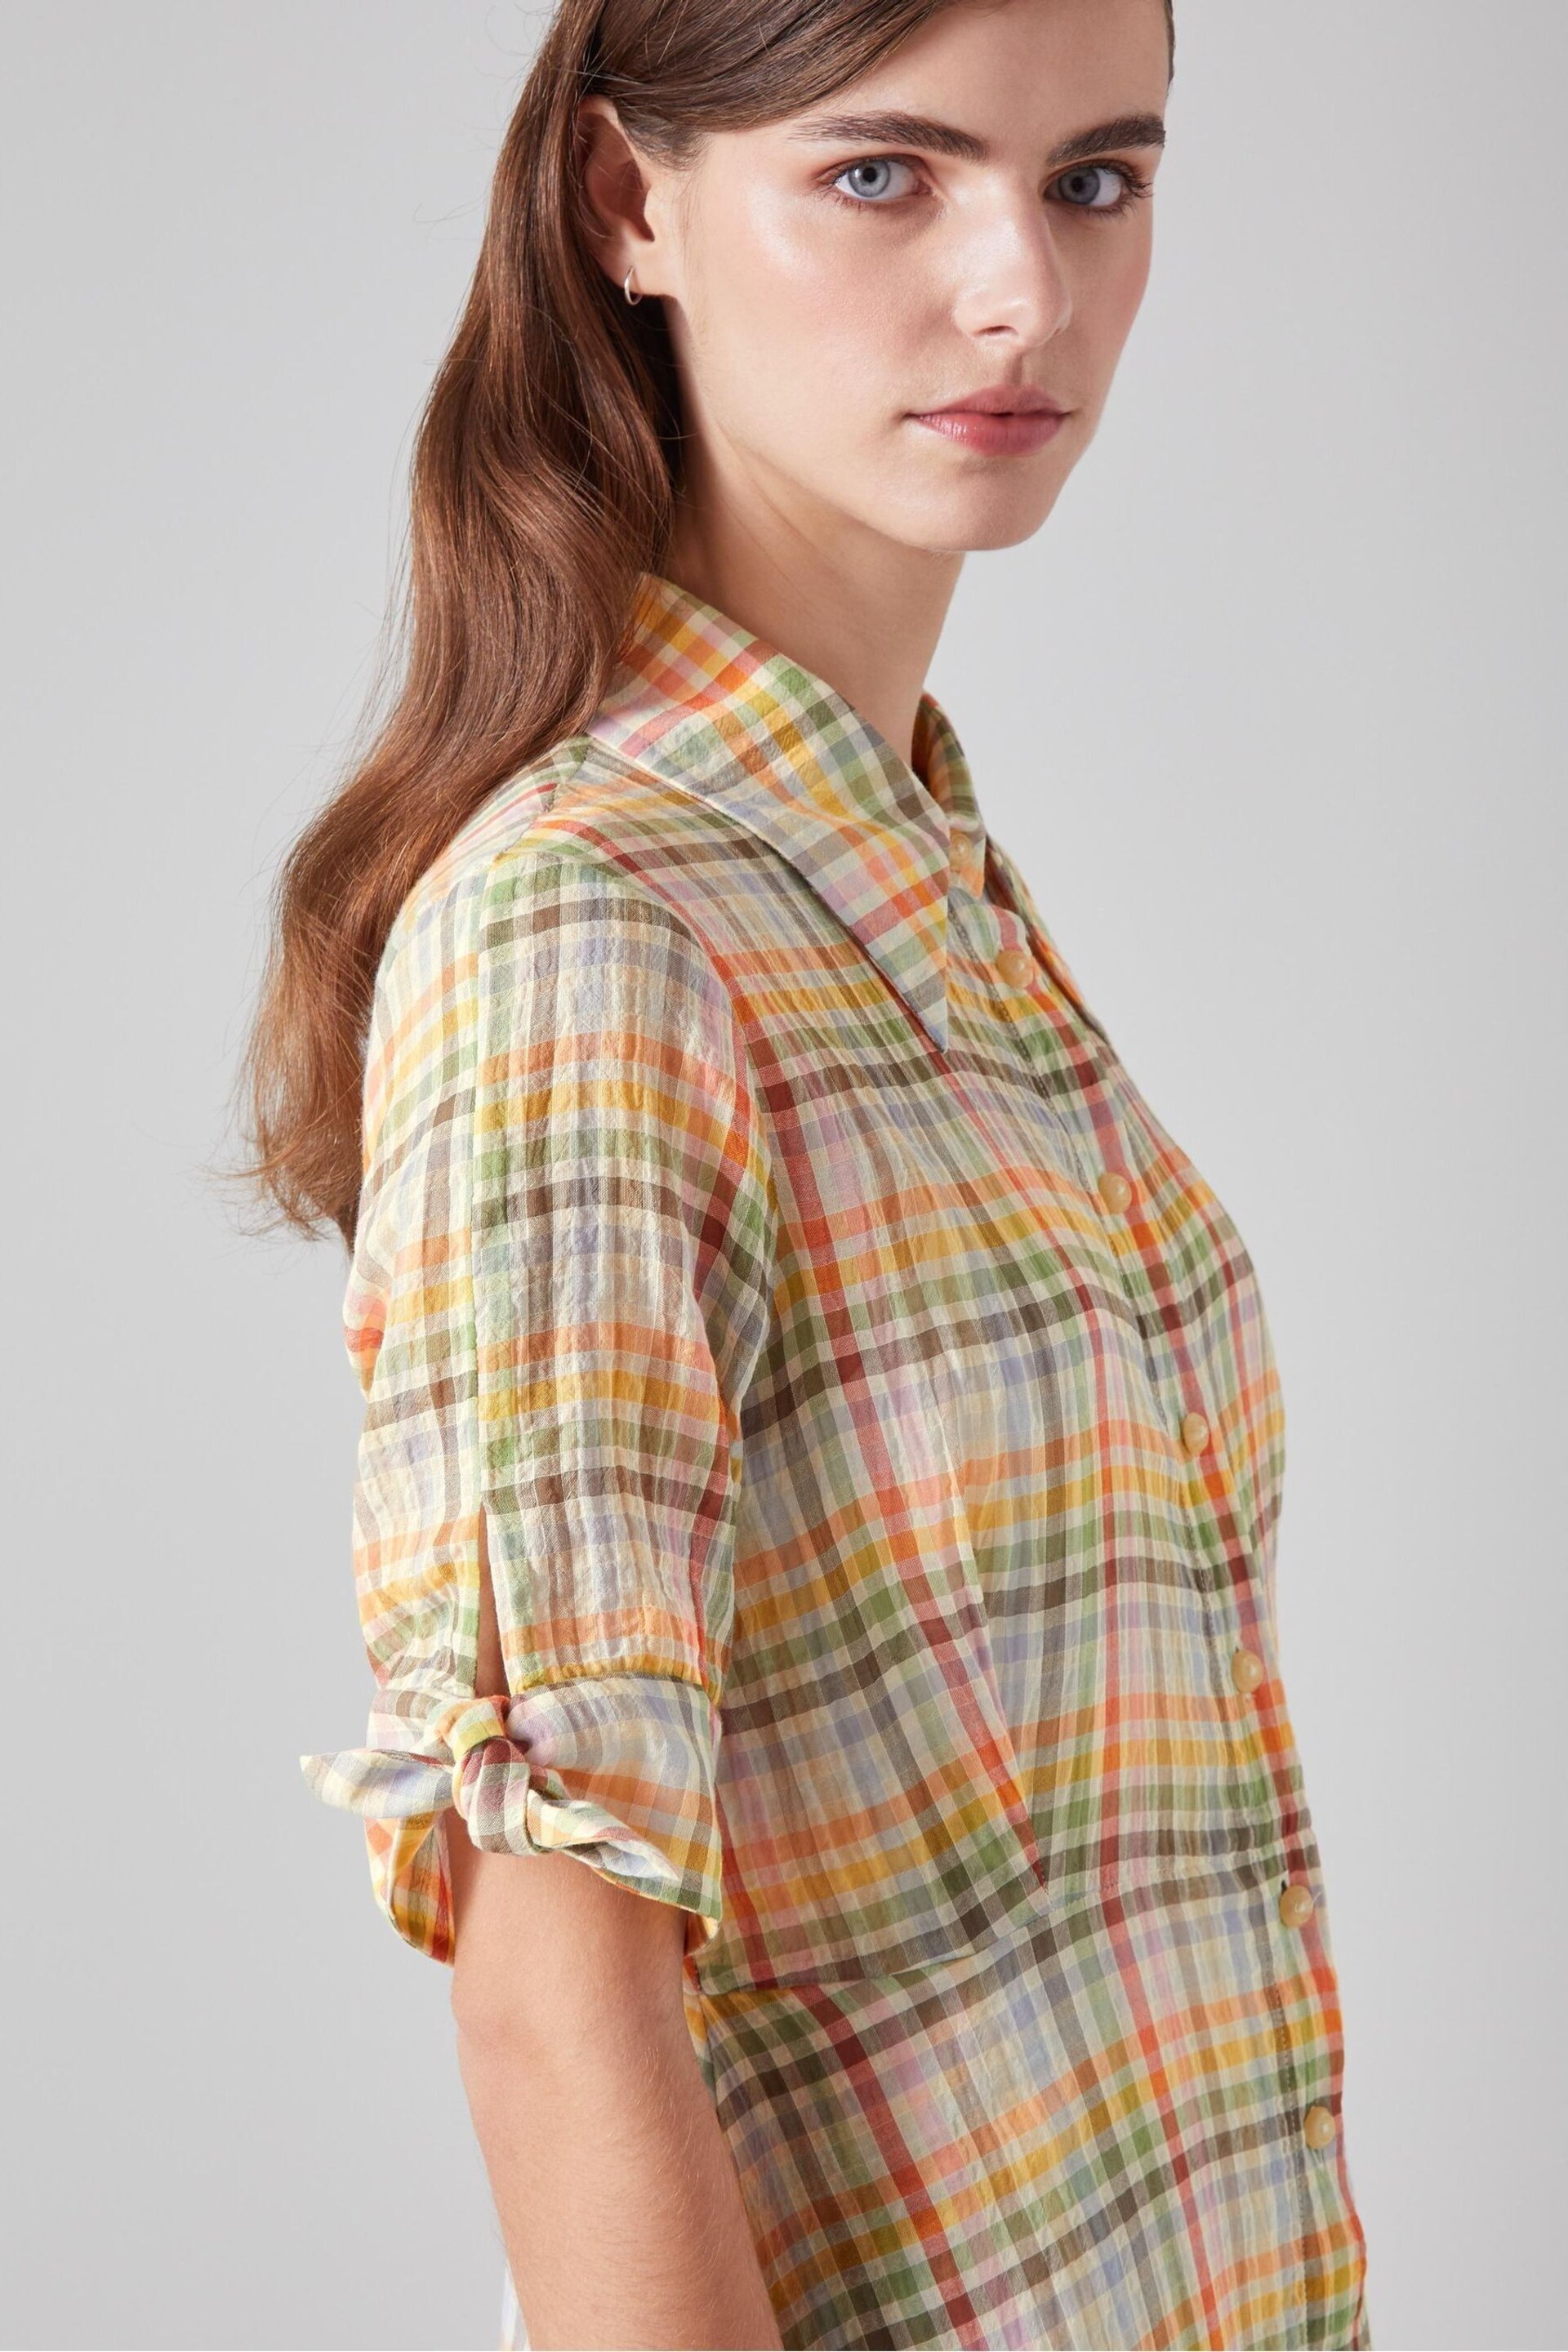 LK Bennett Saffron Gingham Seersucker Cotton Shirt Dress - Image 3 of 3